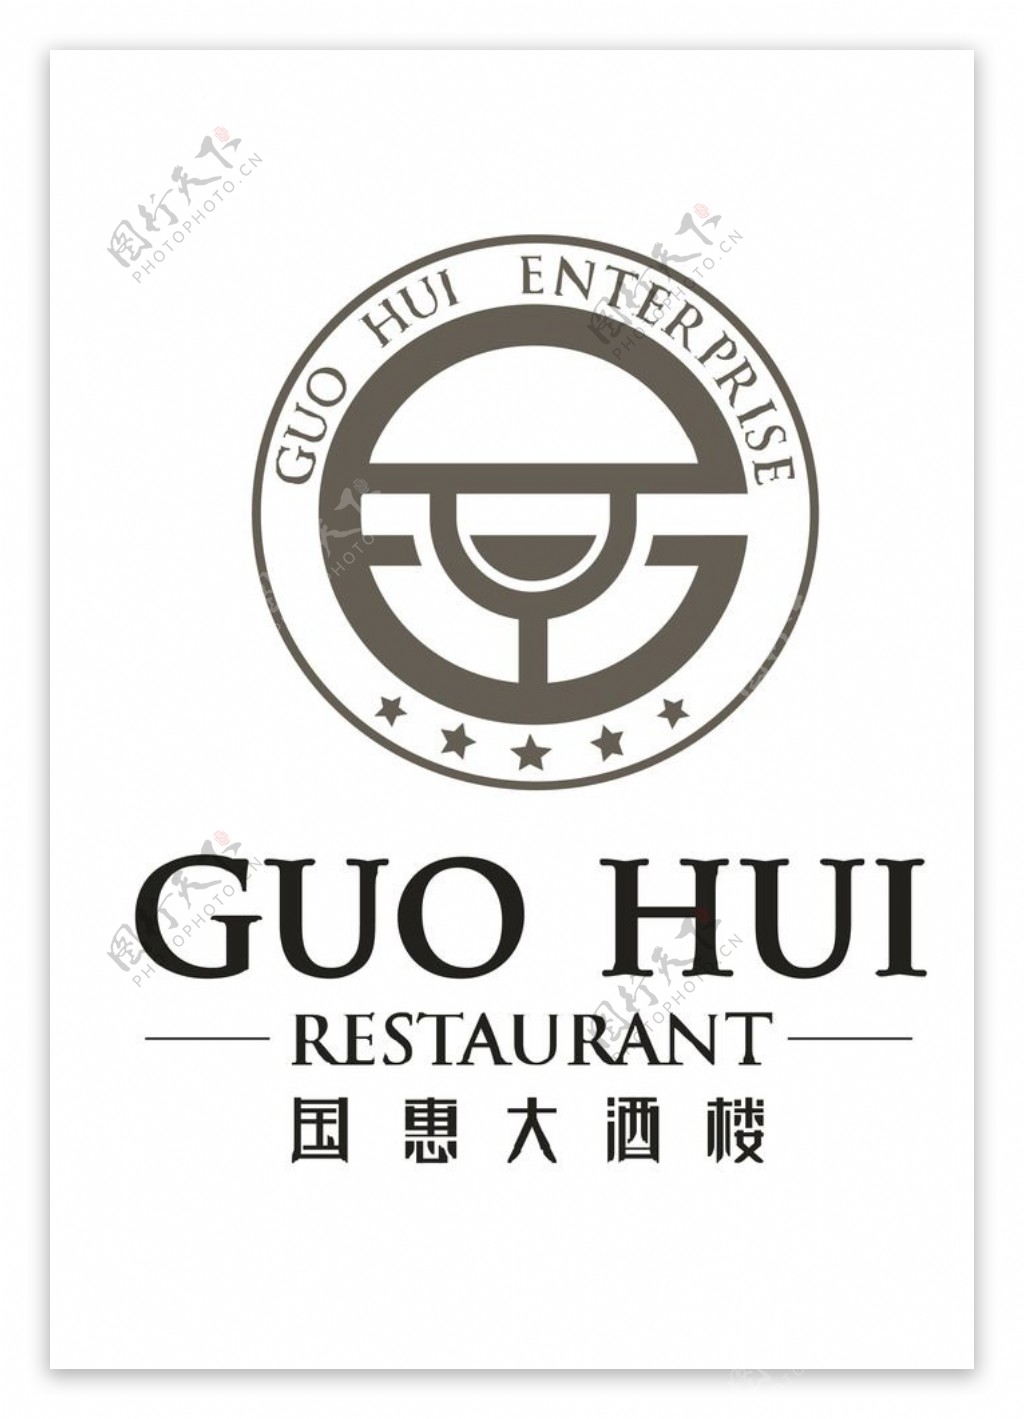 国惠大酒楼logo